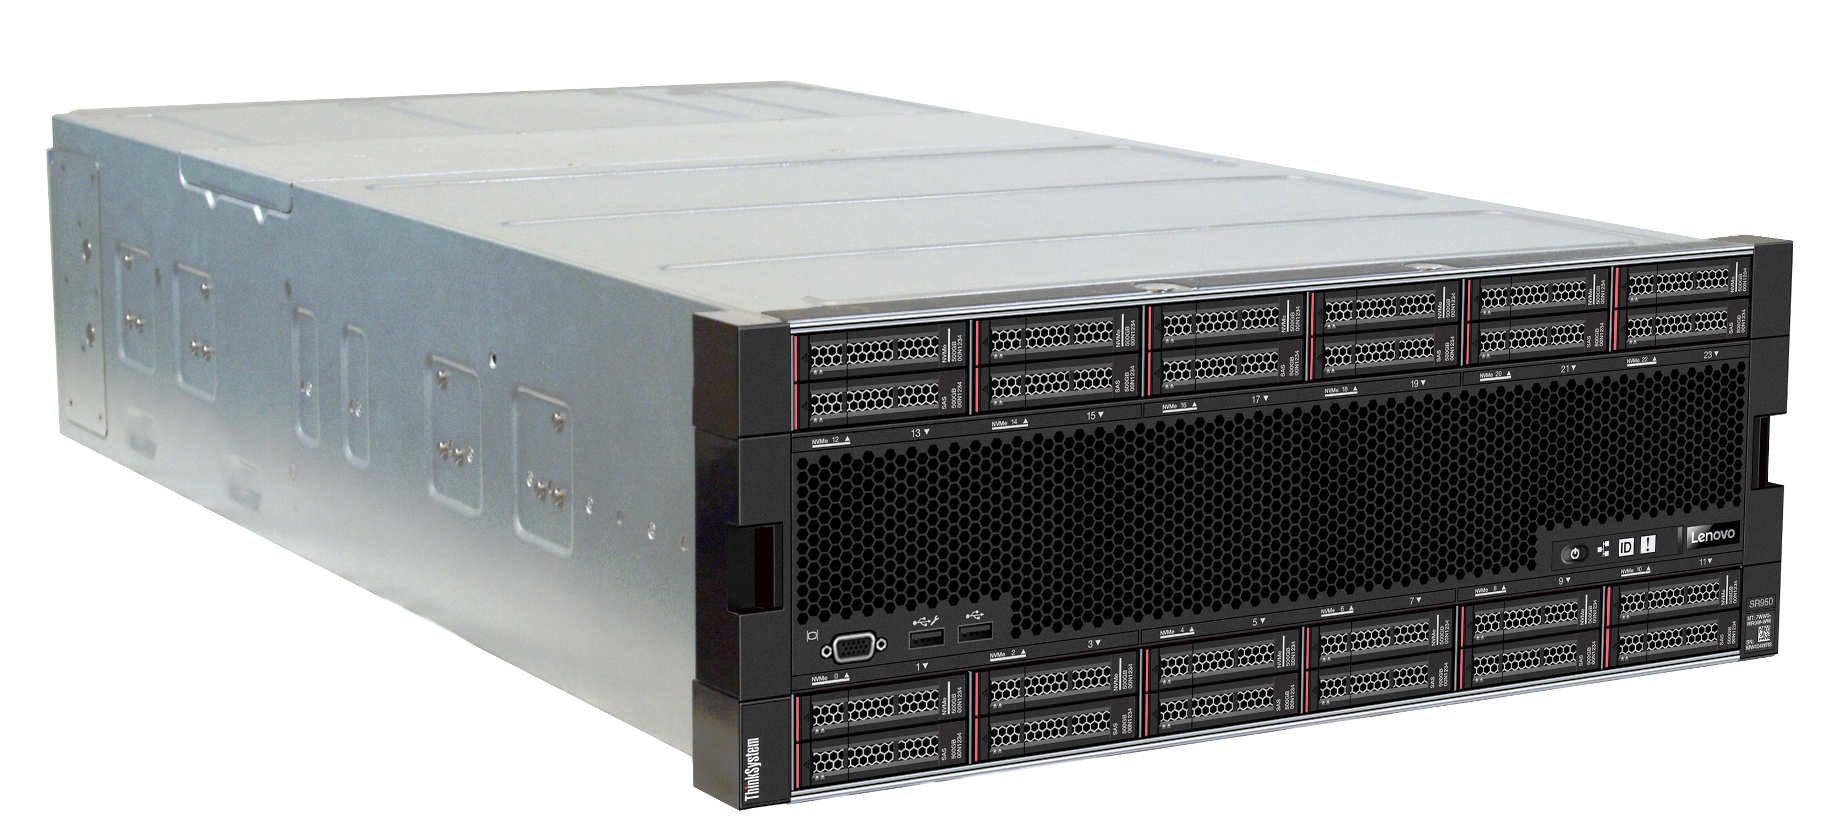 The ThinkSystem SR950 server